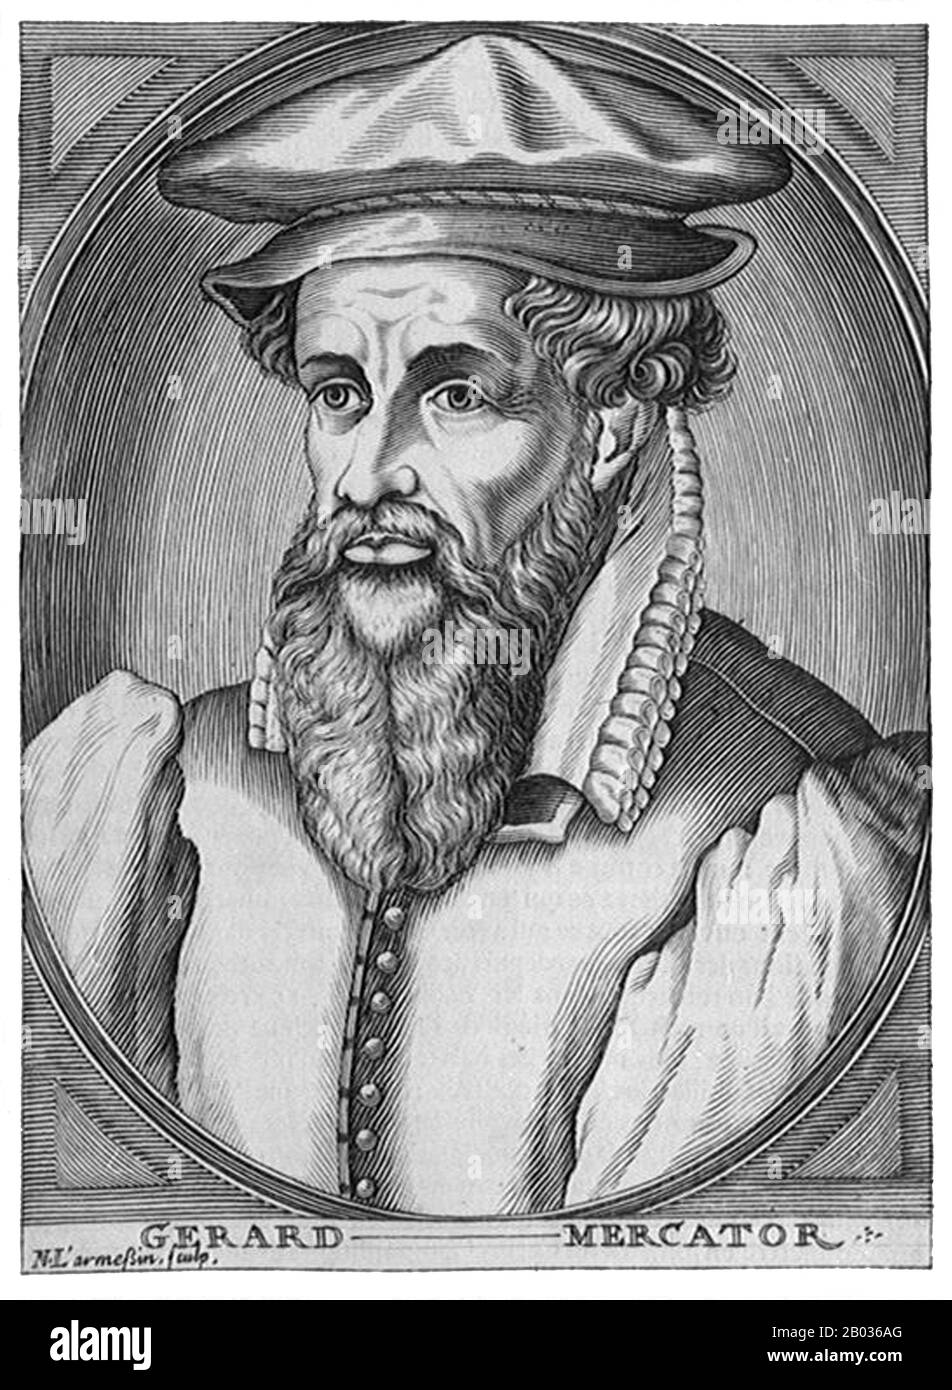 Gerardus Mercator, un alemán flamenco (5 de marzo de 1512 – 2 de diciembre de 1594) fue un cartógrafo conocido por crear un mapa mundial basado en una nueva proyección que representaba cursos de navegación de constante marcación como líneas rectas, una innovación que todavía se emplea en las cartas náuticas utilizadas para la navegación. En su propio día era el geógrafo más famoso del mundo pero, además, tenía intereses en teología, filosofía, historia, matemáticas y magnetismo, así como ser un grabador, calígrafo y creador de globos e instrumentos científicos. Foto de stock